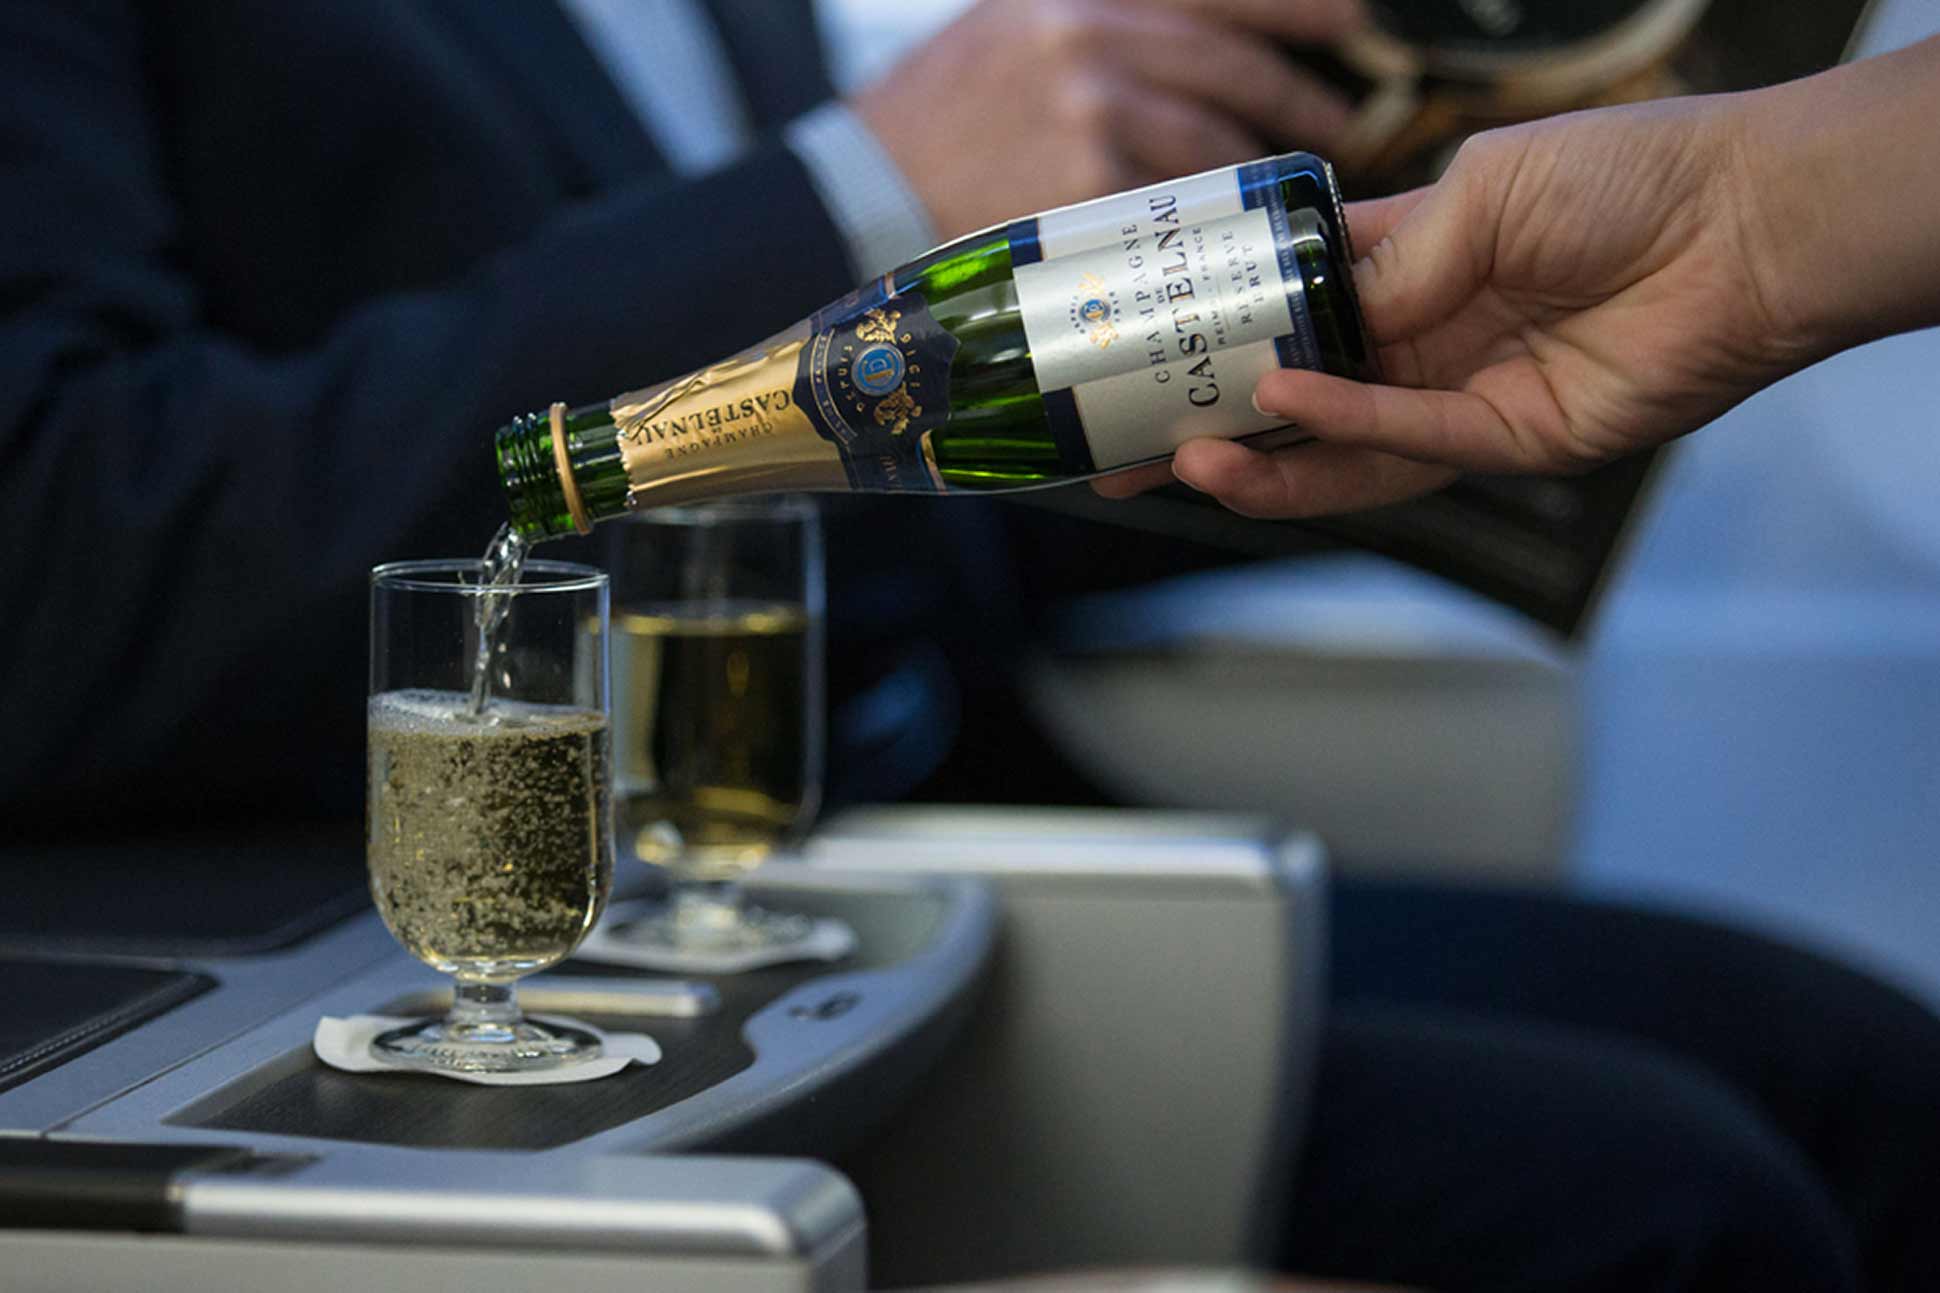 British Airways now serving Champagne de Castlenau on short haul flights